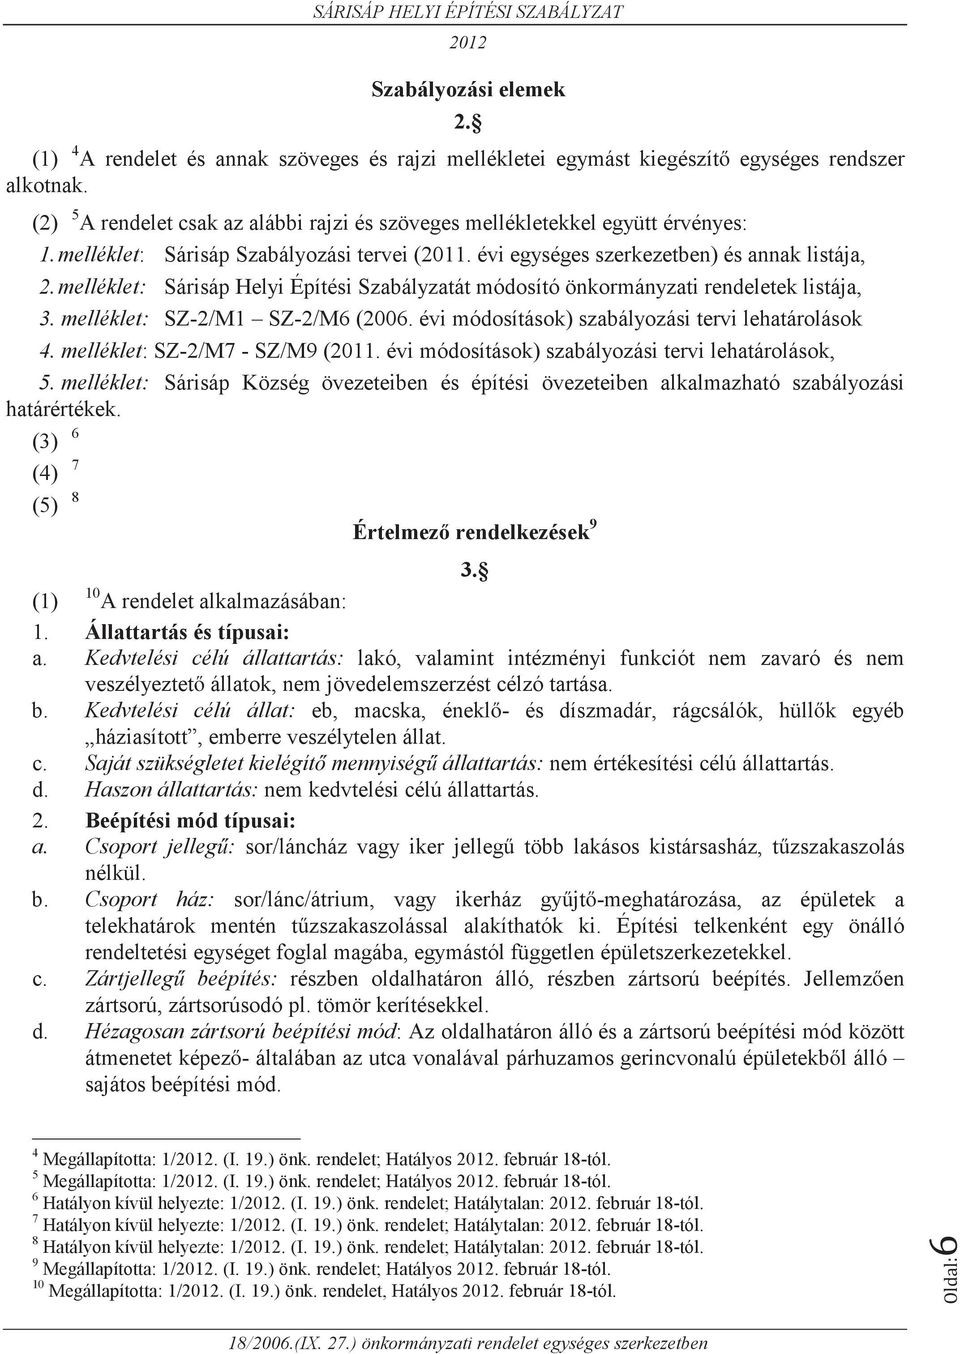 melléklet: Sárisáp Helyi Építési Szabályzatát módosító önkormányzati rendeletek listája, 3. melléklet: SZ-2/M1 SZ-2/M6 (2006. évi módosítások) szabályozási tervi lehatárolások 4.